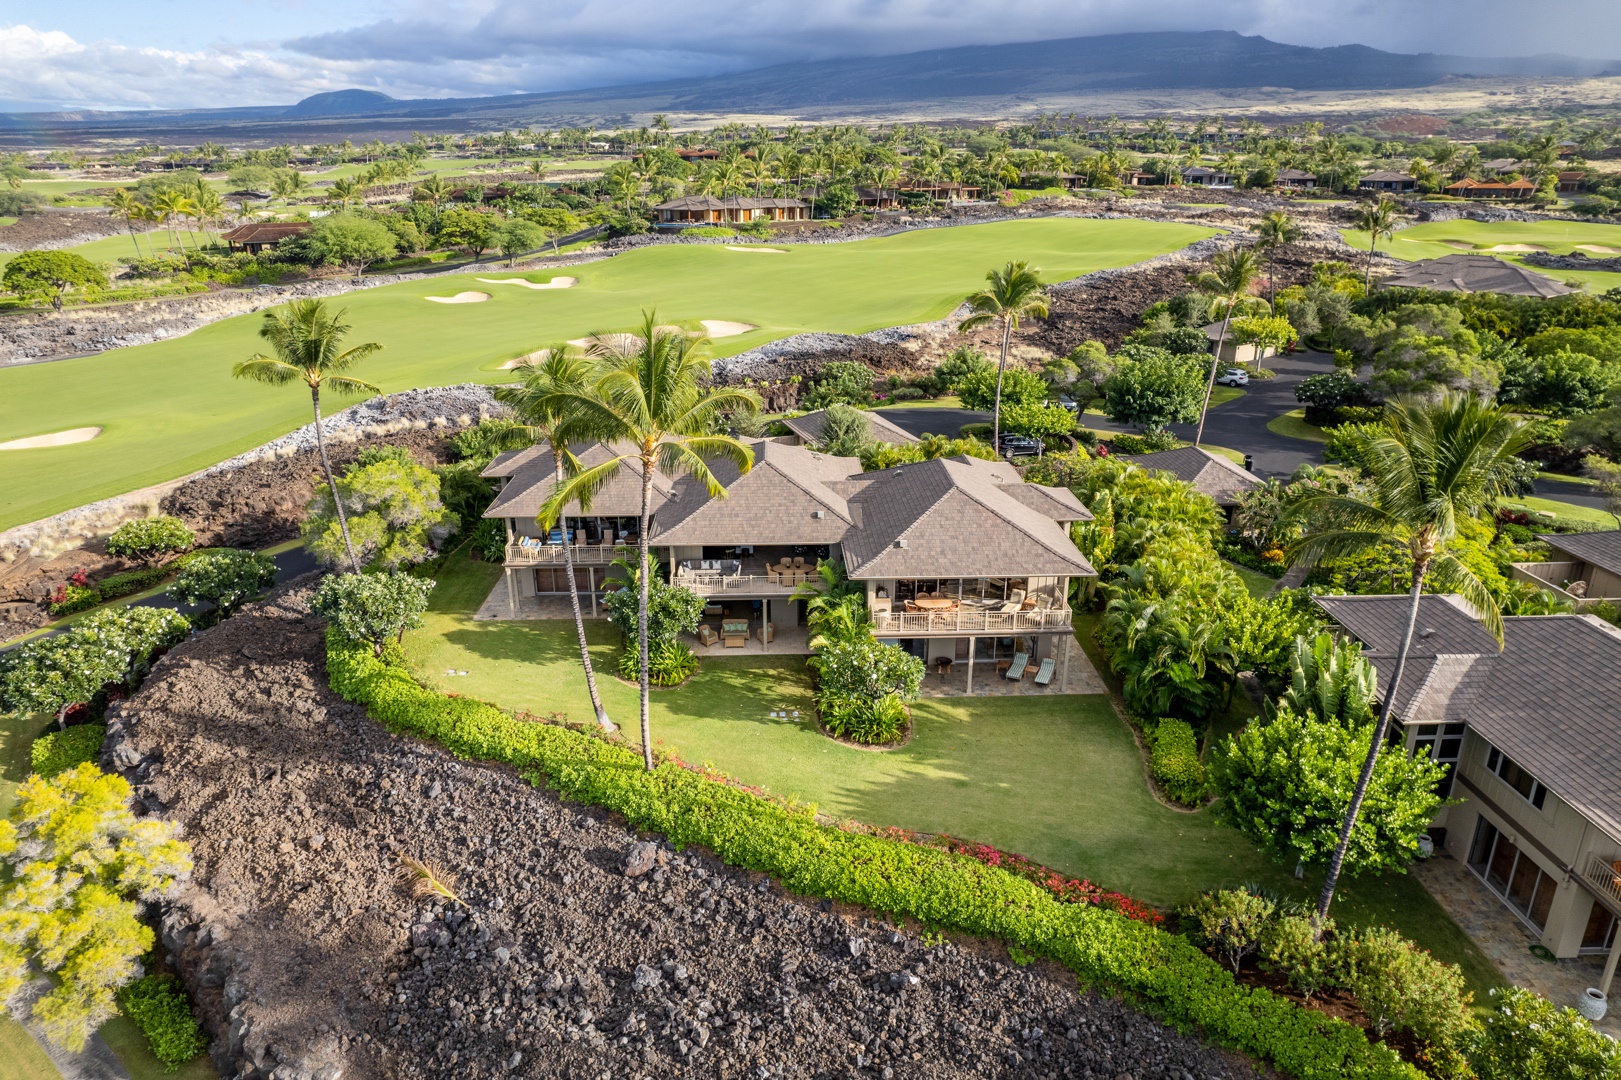 Kailua Kona Vacation Rentals, 3BD Ke Alaula Villa (210B) at Four Seasons Resort at Hualalai - Wide shot of back of property showcasing Mt. Hualalai beyond